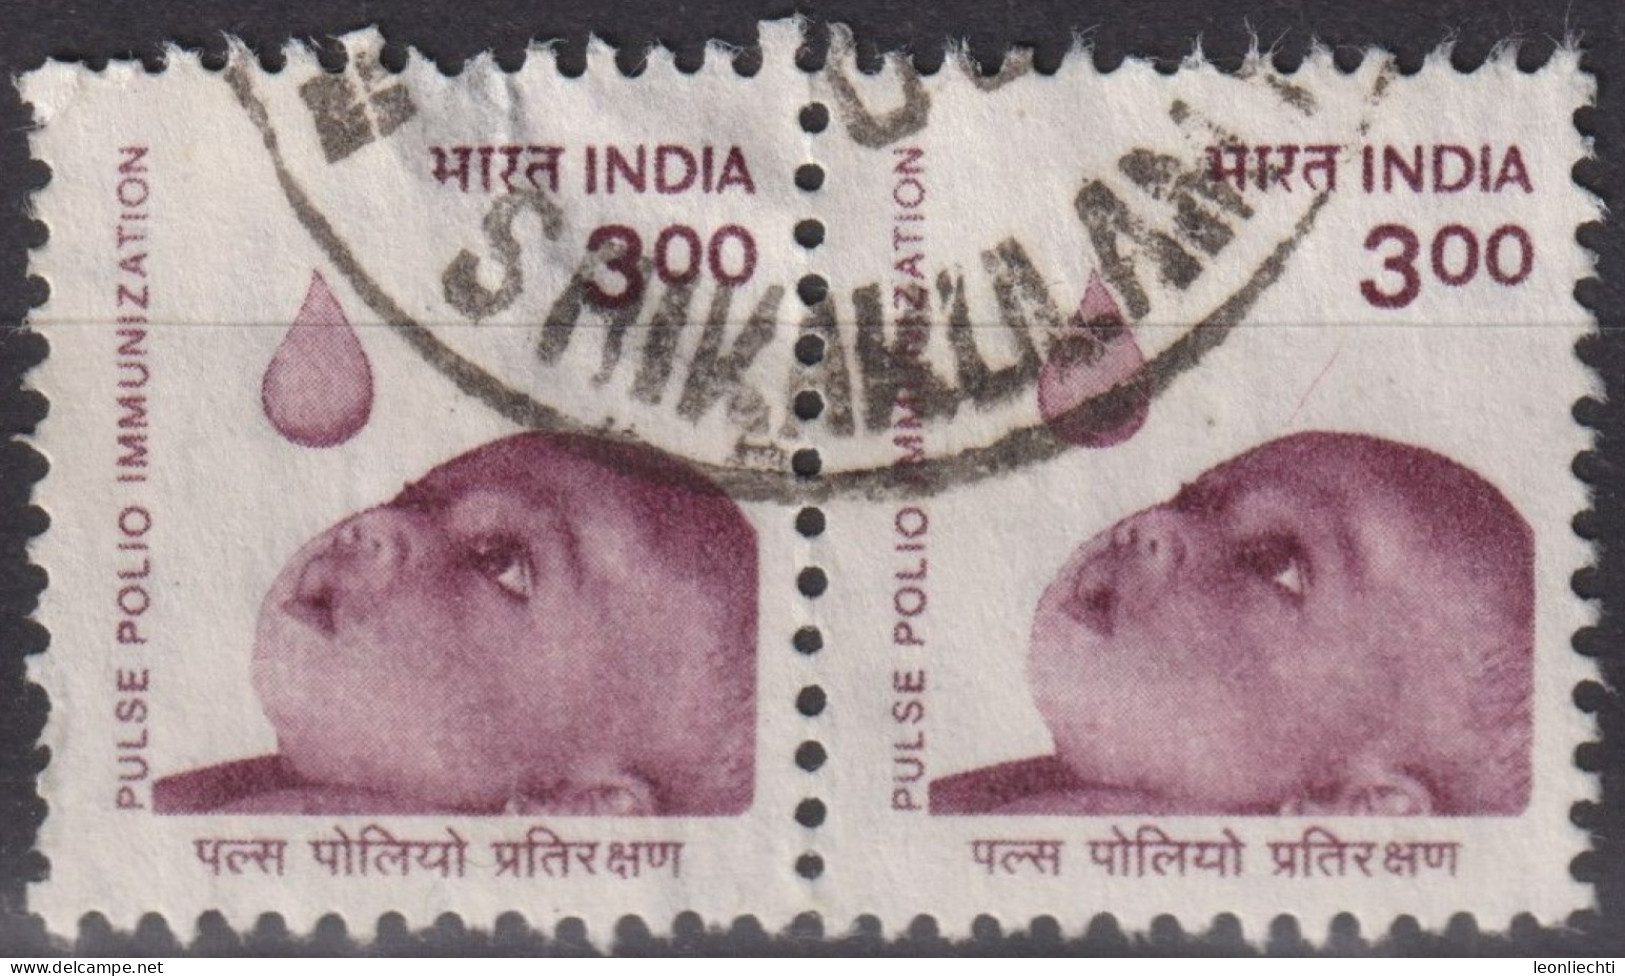 1998 Indien ° Mi:IN 1647, Sn:IN 1712, Yt:IN 1436, Baby And Drop Of Polio Vaccine - Gebruikt